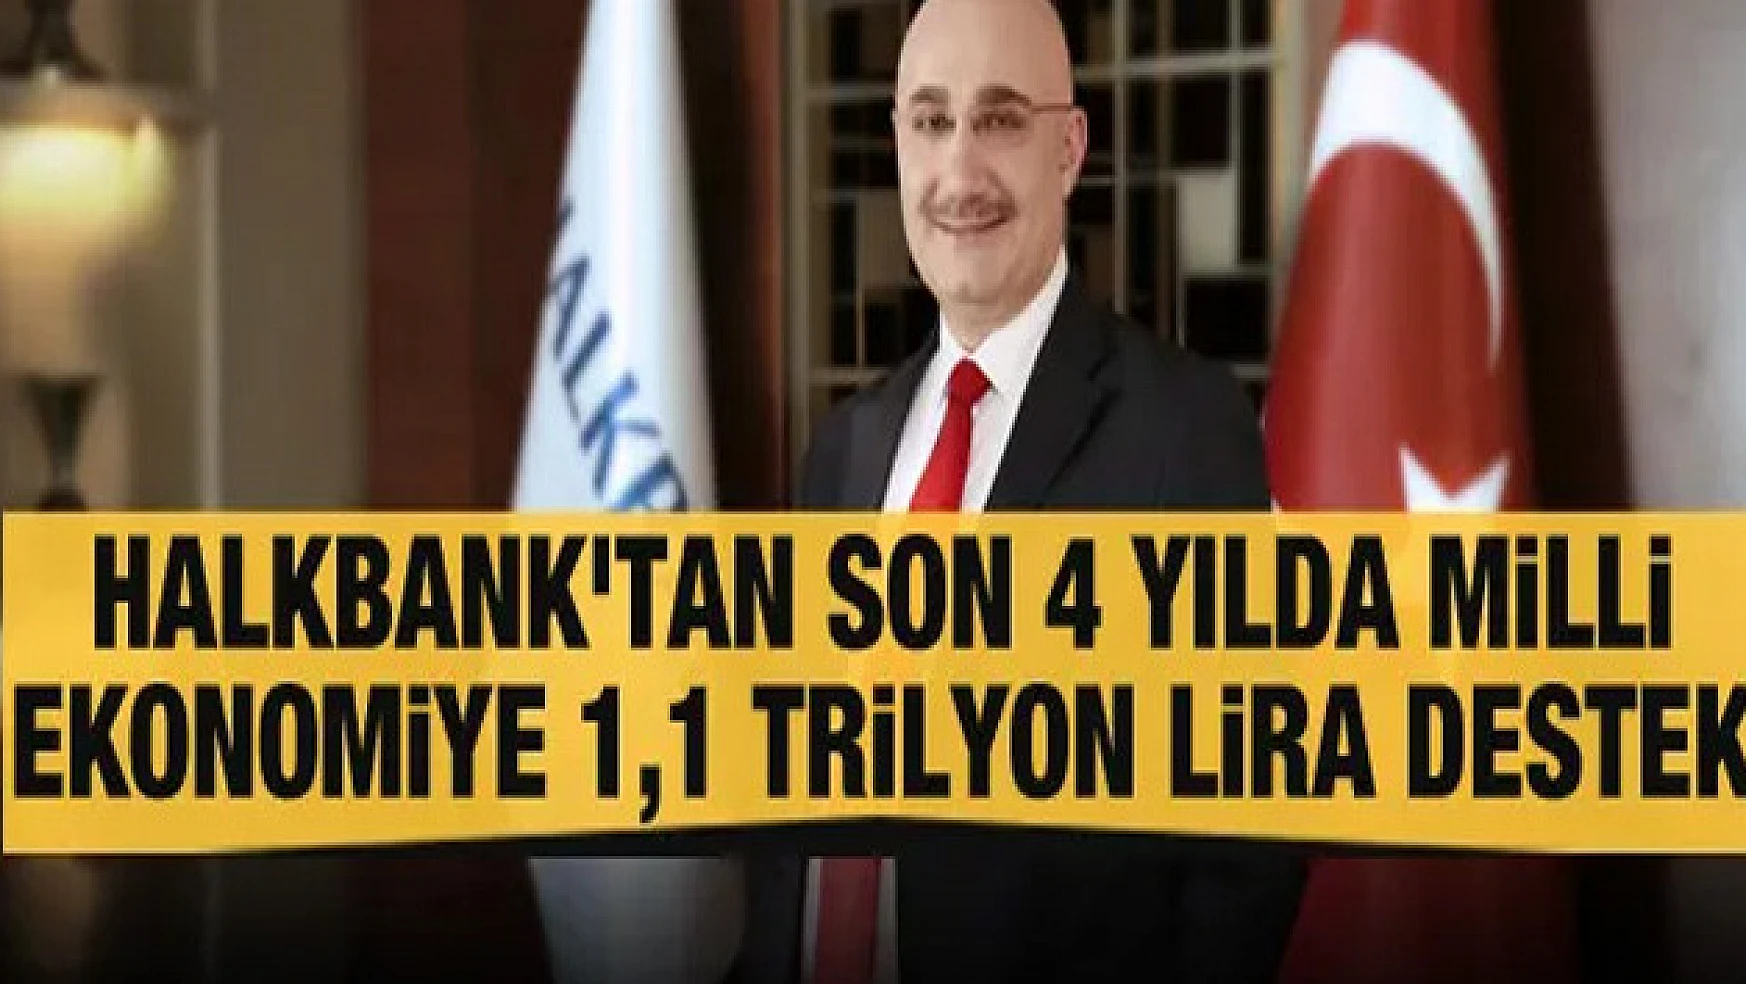 Halkbank'tan son 4 yılda milli ekonomiye 1,1 trilyon lira destek